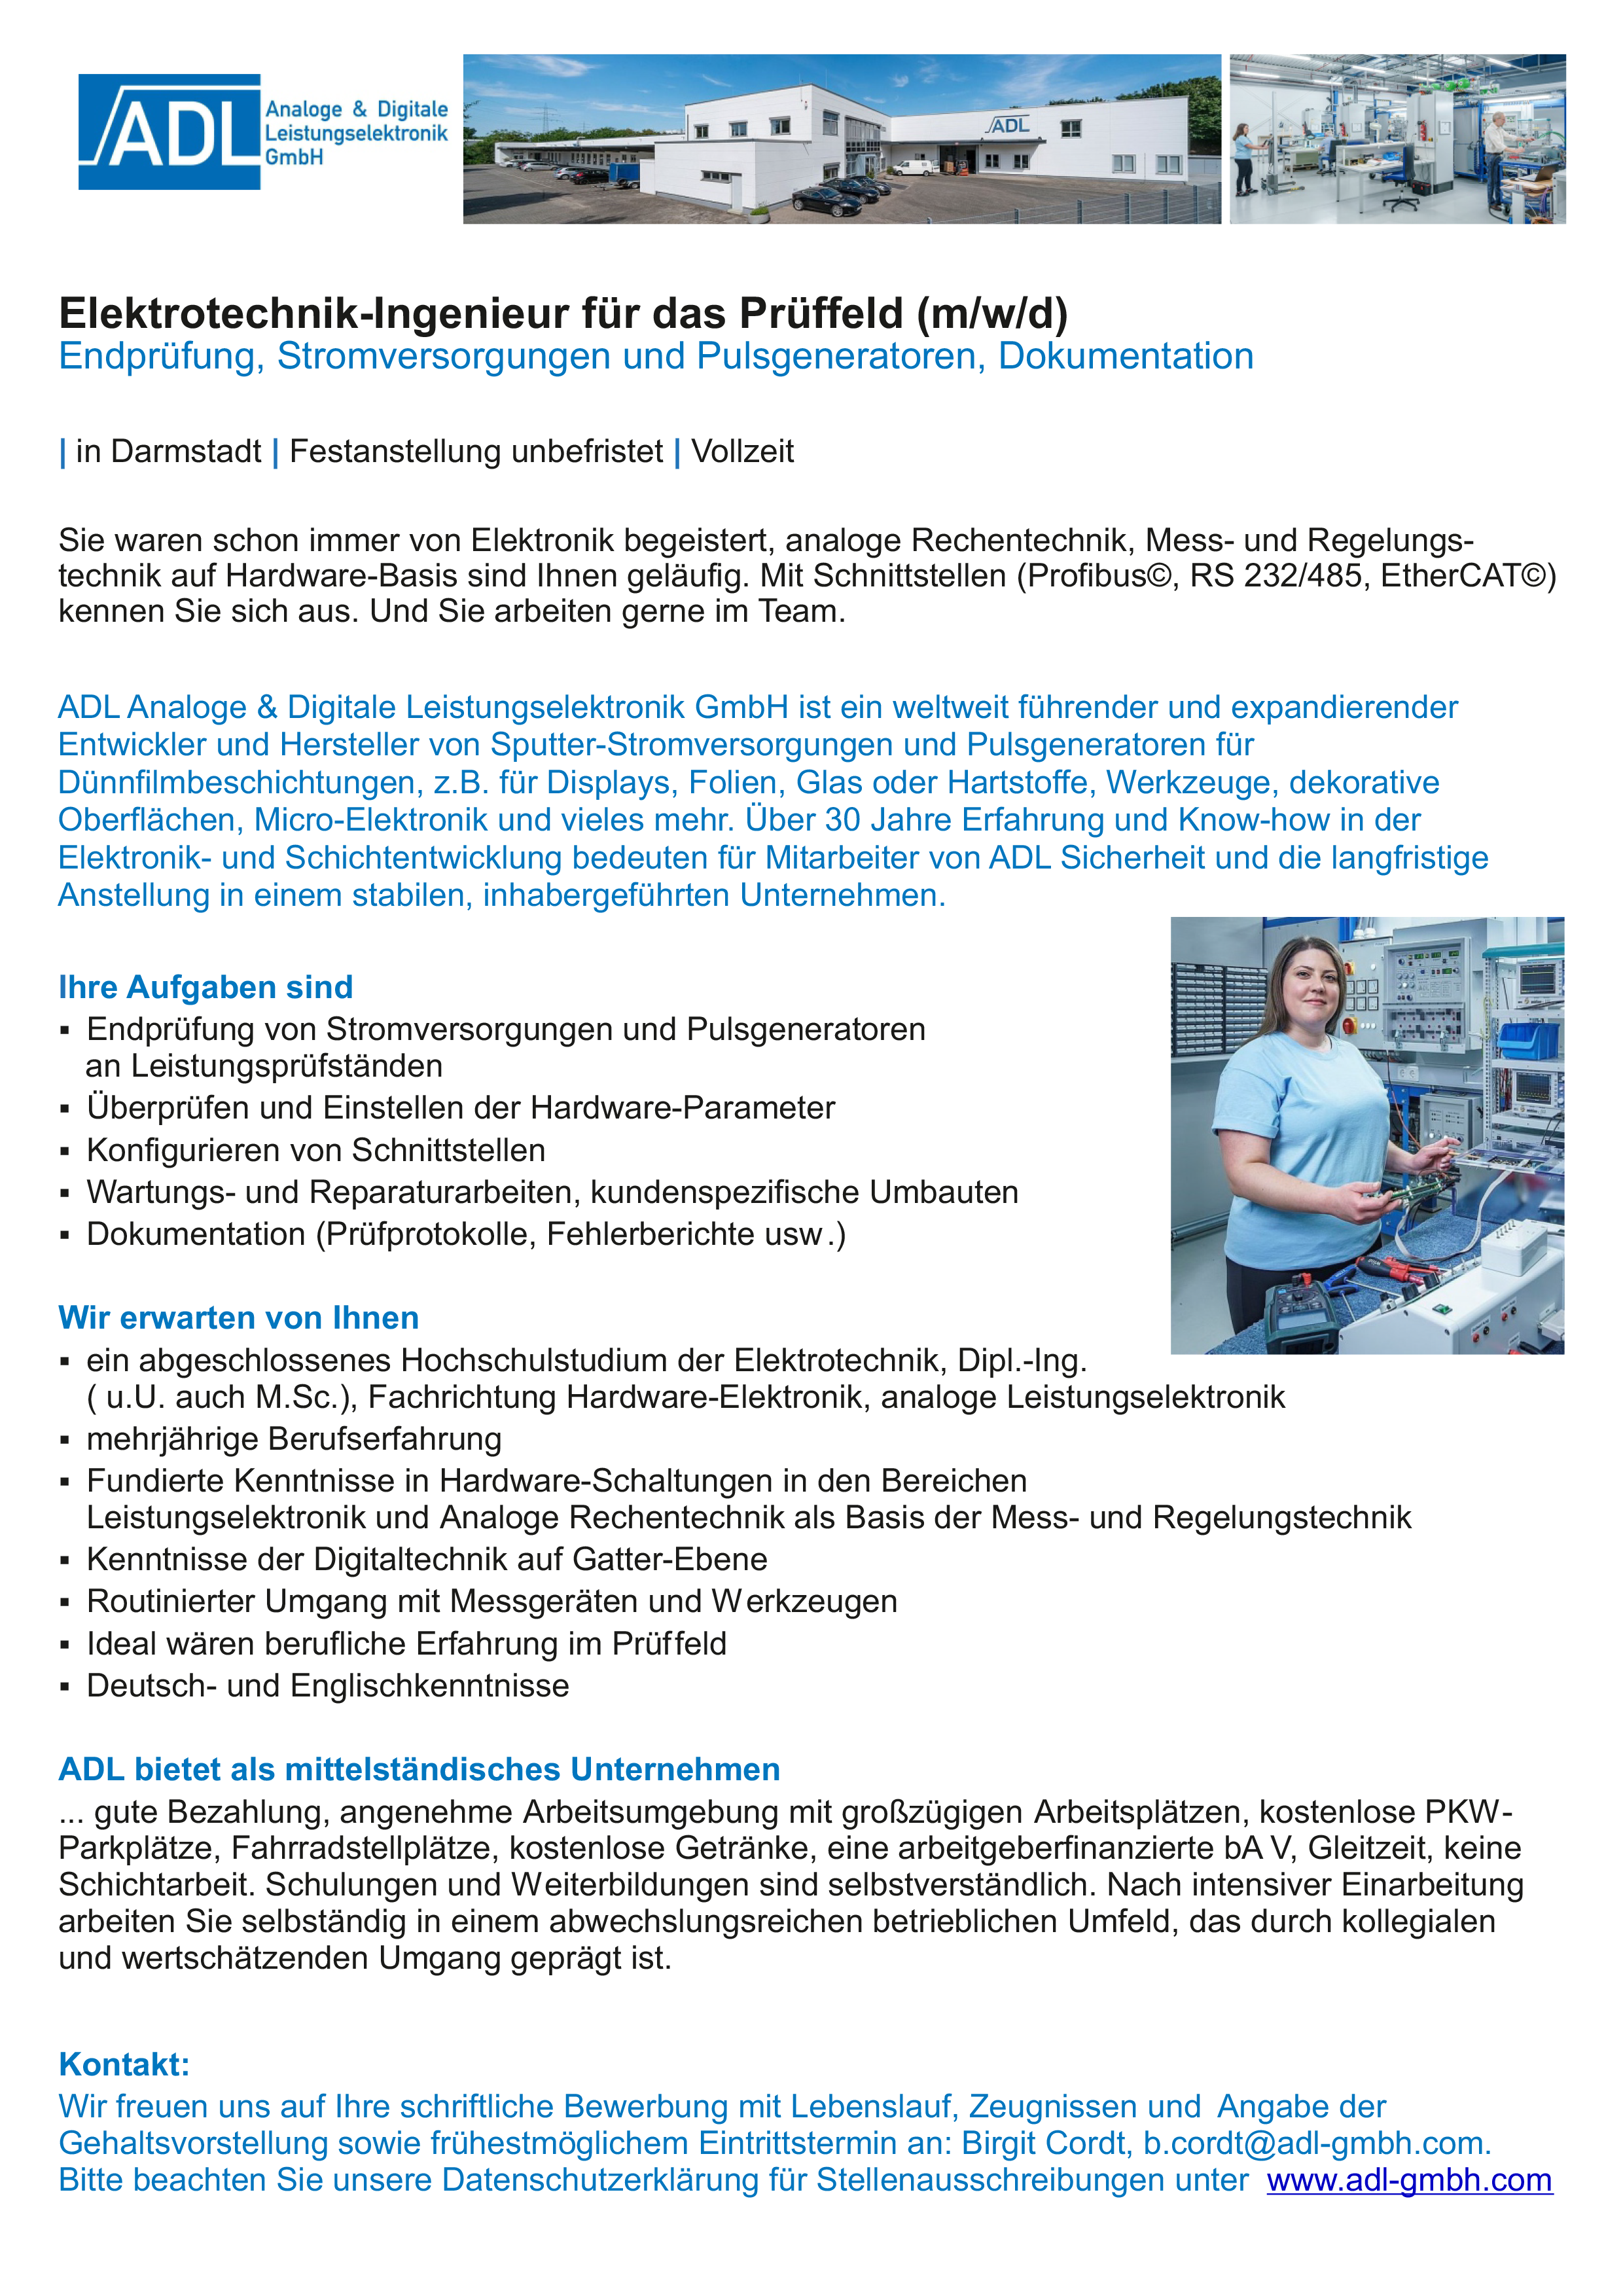 ADL Analoge & Digitale Leistungselektronik GmbH Darmstadt